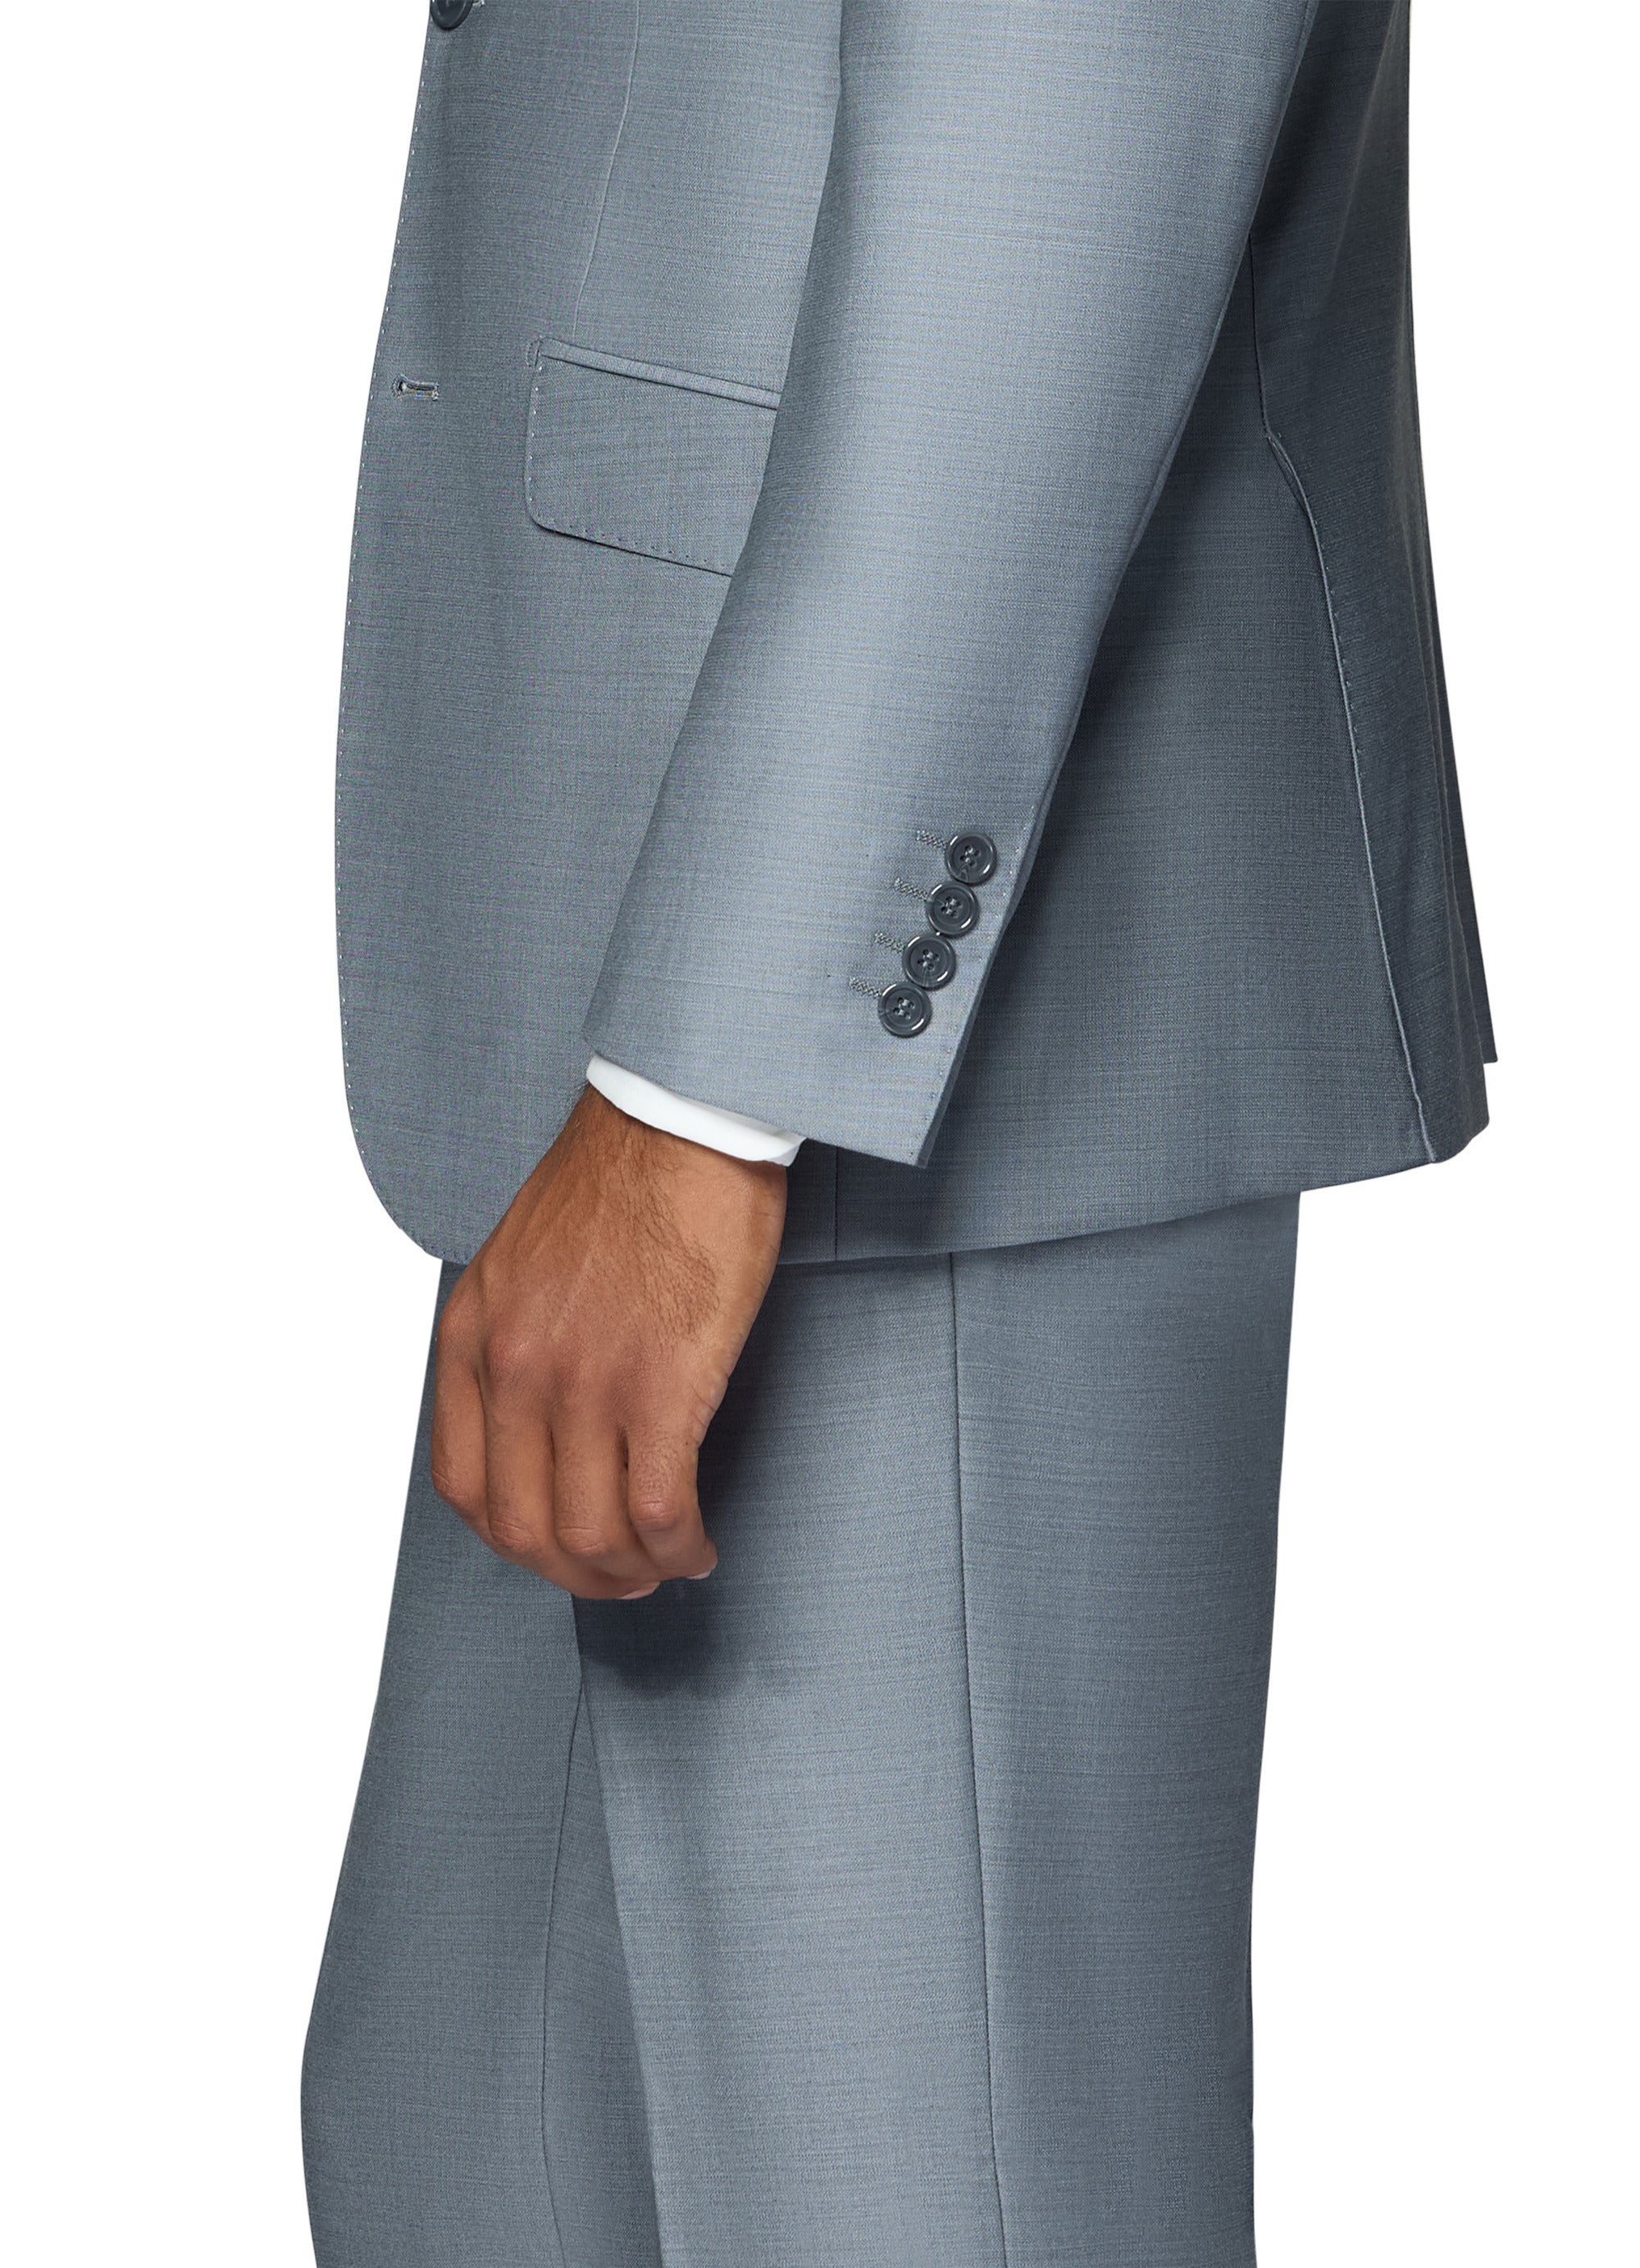 Berragamo Essex Elegant - Faille Wool Solid Suit - Medium Grey